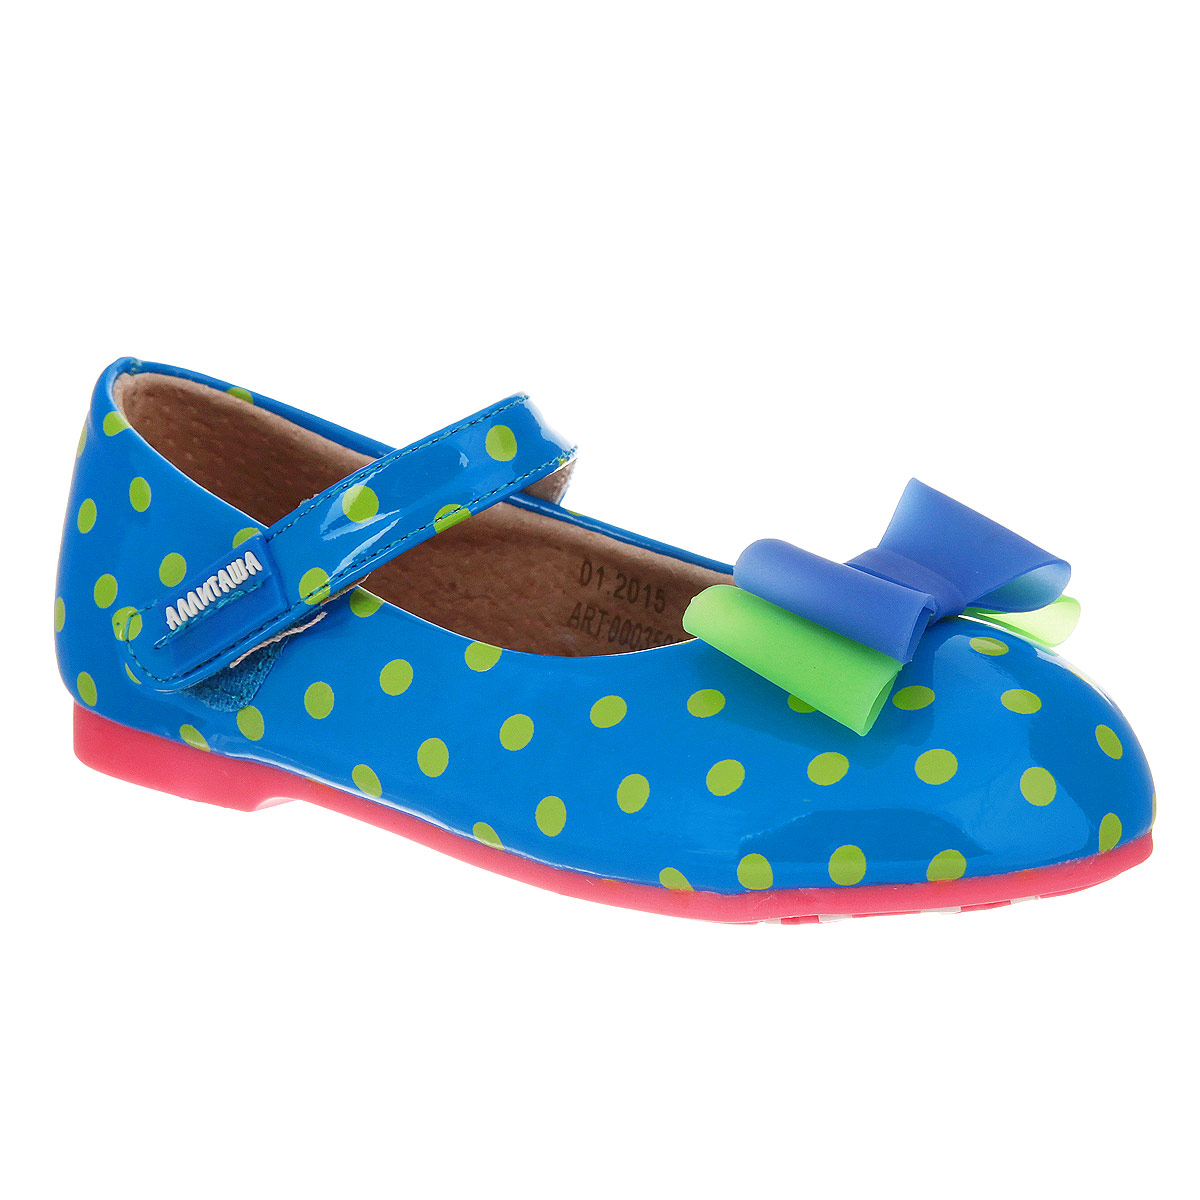 Туфли для девочки Аллигаша, цвет: синий, салатовый. 000350302. Размер 25